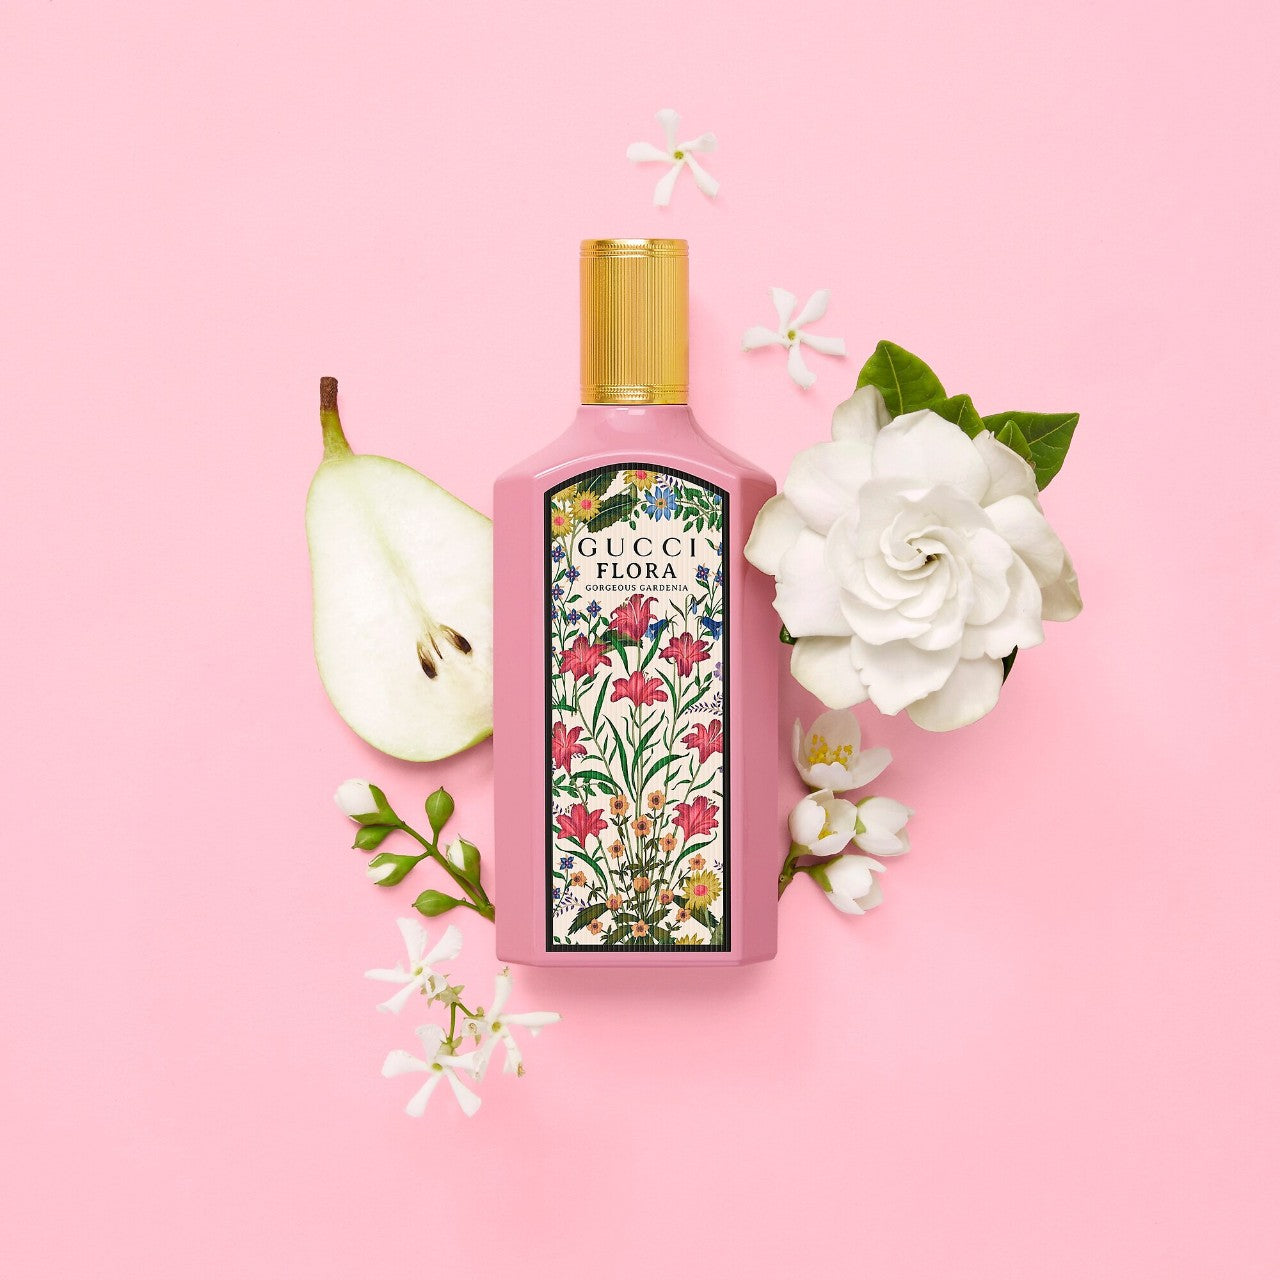 Gucci, Flora Gorgeous Eau de Parfum Perfume Set